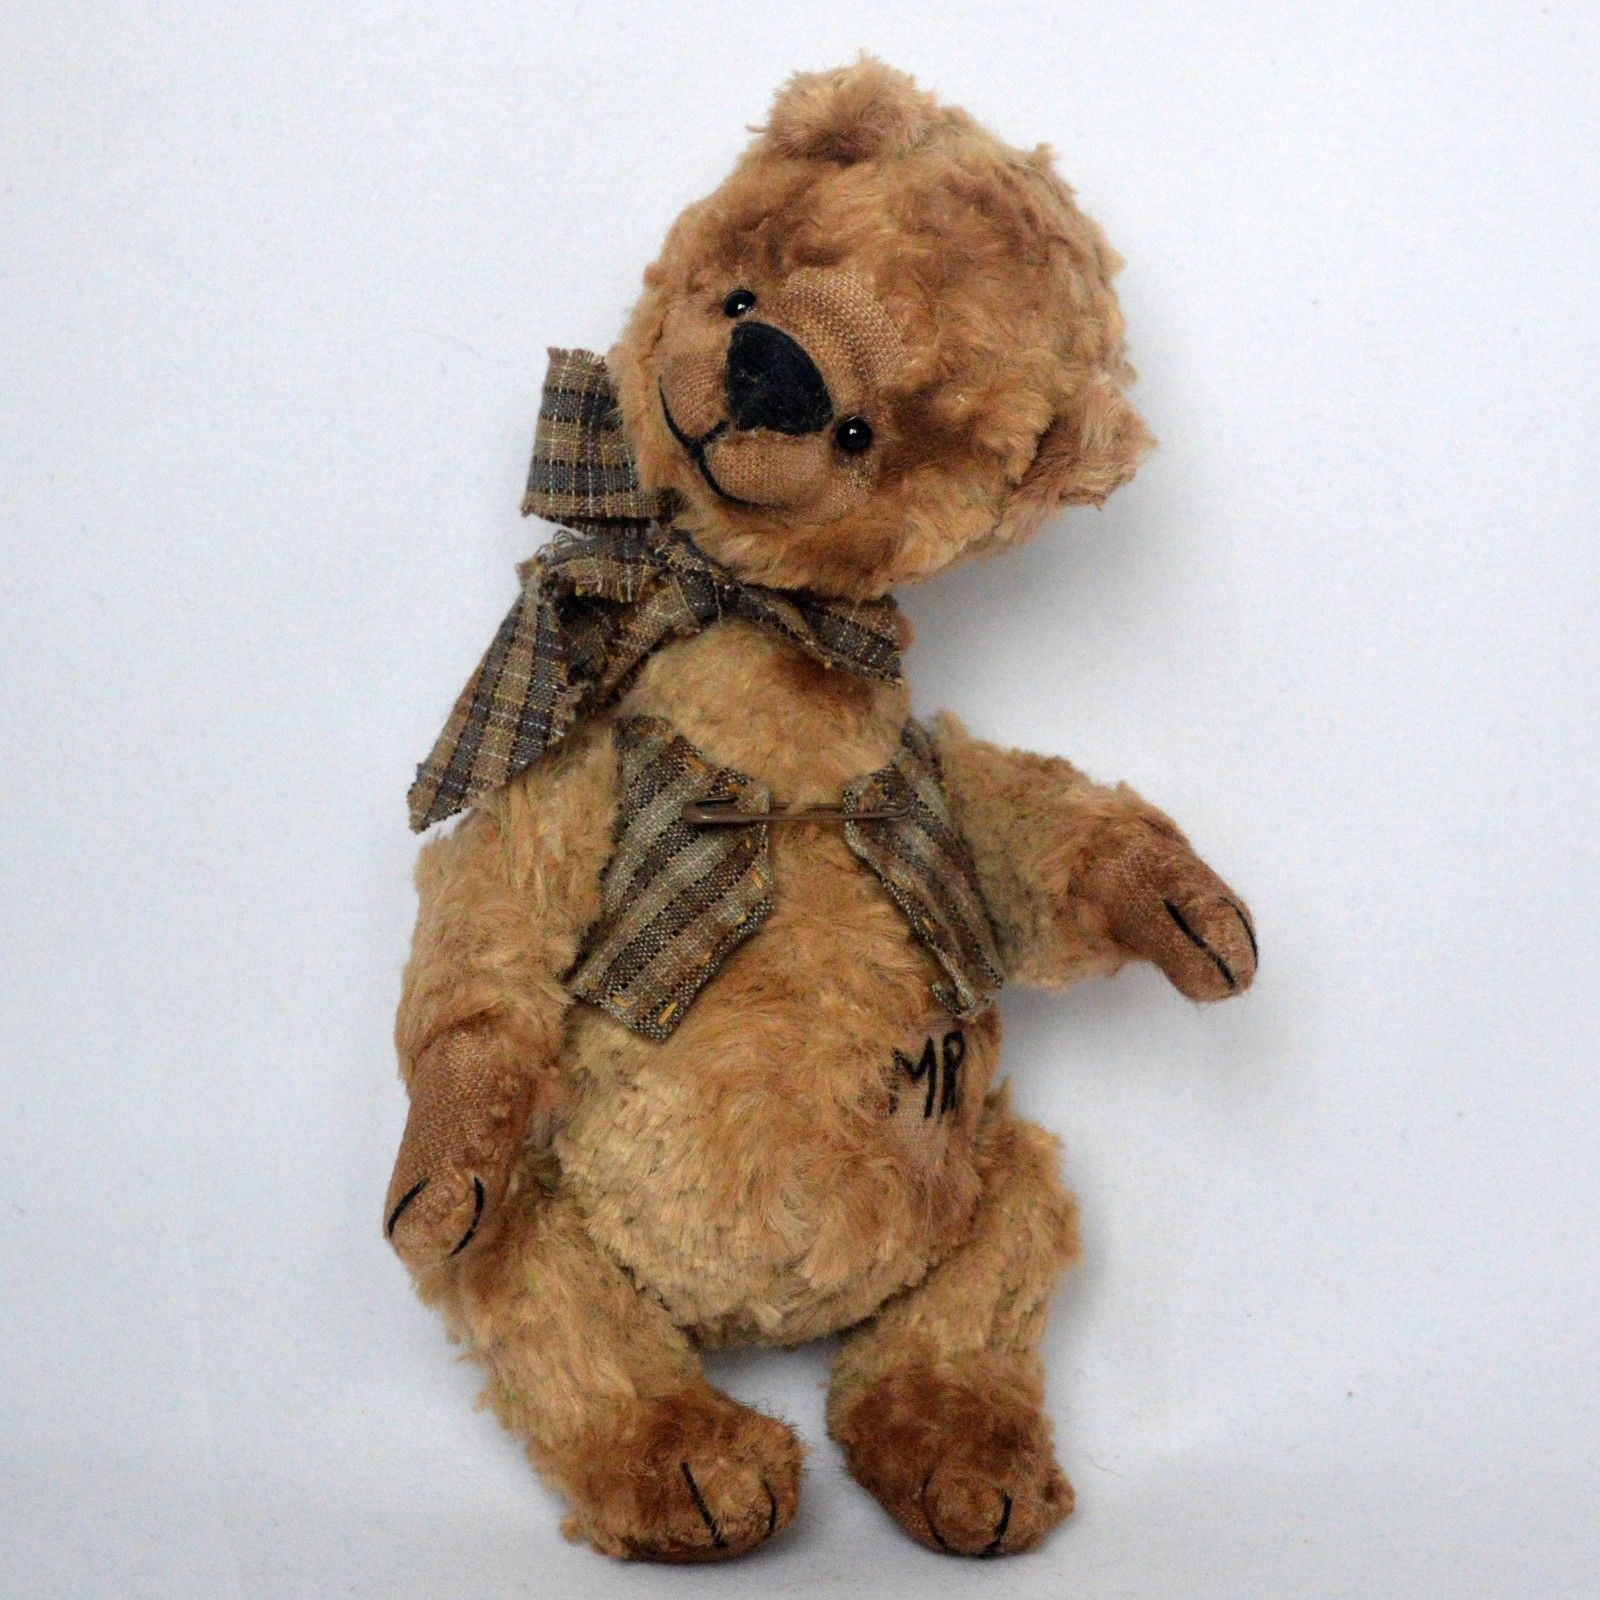 OOAK artist handmade teddy bear in vintage clothes, 7in.